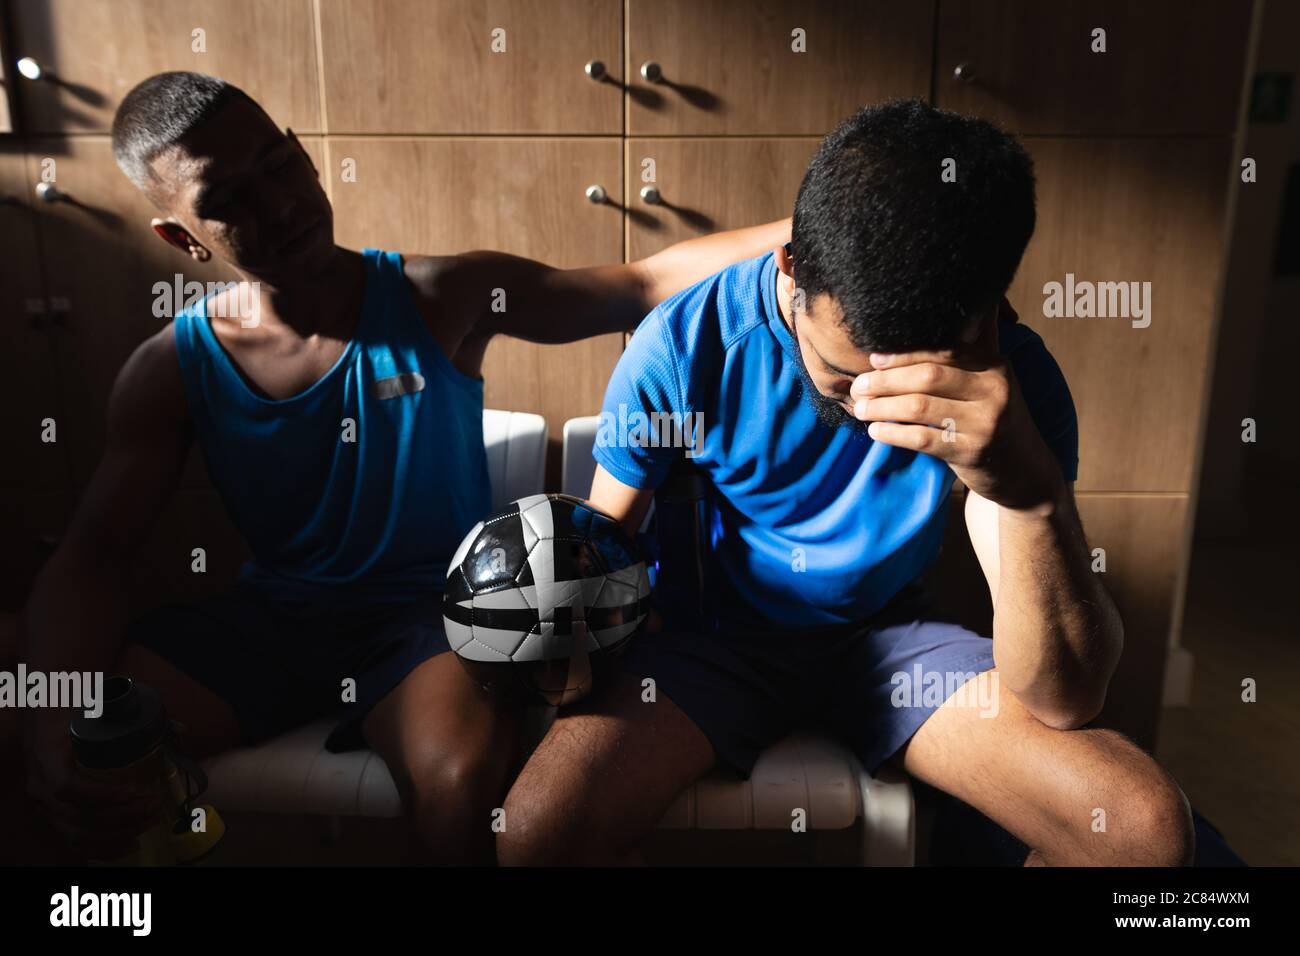 Zwei Männer mit gemischtem Rennen, die in Sportkleidung in der Umkleidekabinen sitzen, während einer Spielpause, den Ball in Ruhe halten und enttäuscht sein. Stockfoto